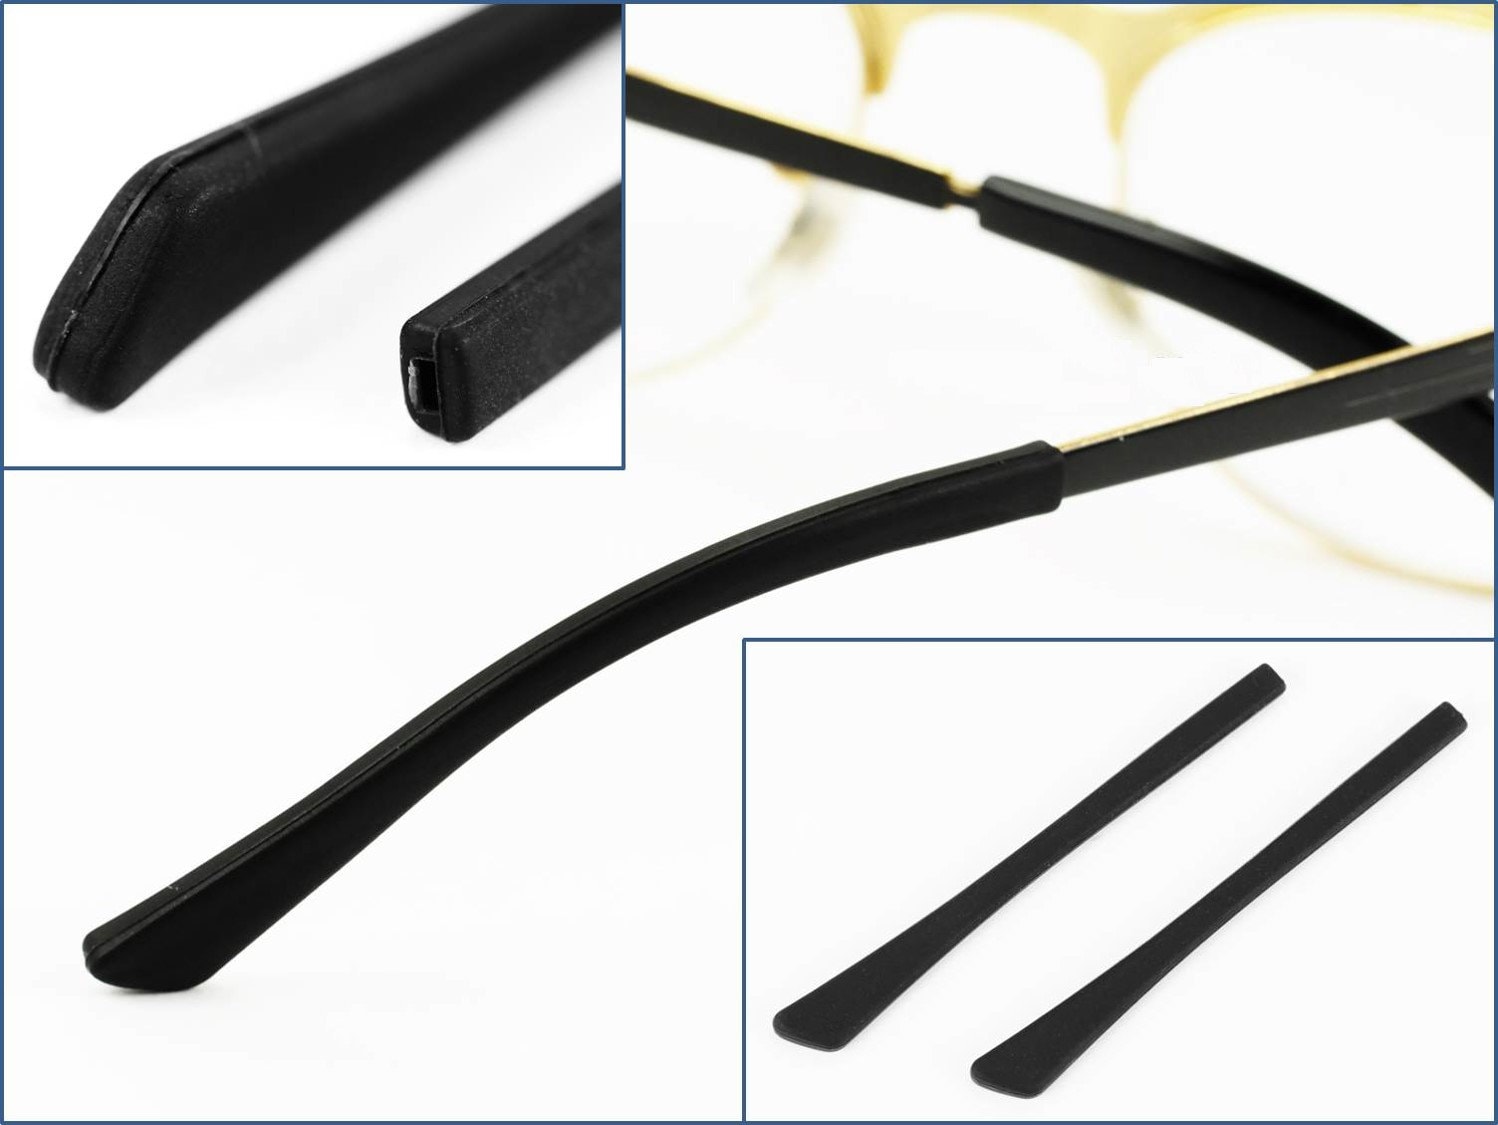 10 Packung Silikon Antirutsch Überzüge für Bügelenden / Brillenbügel